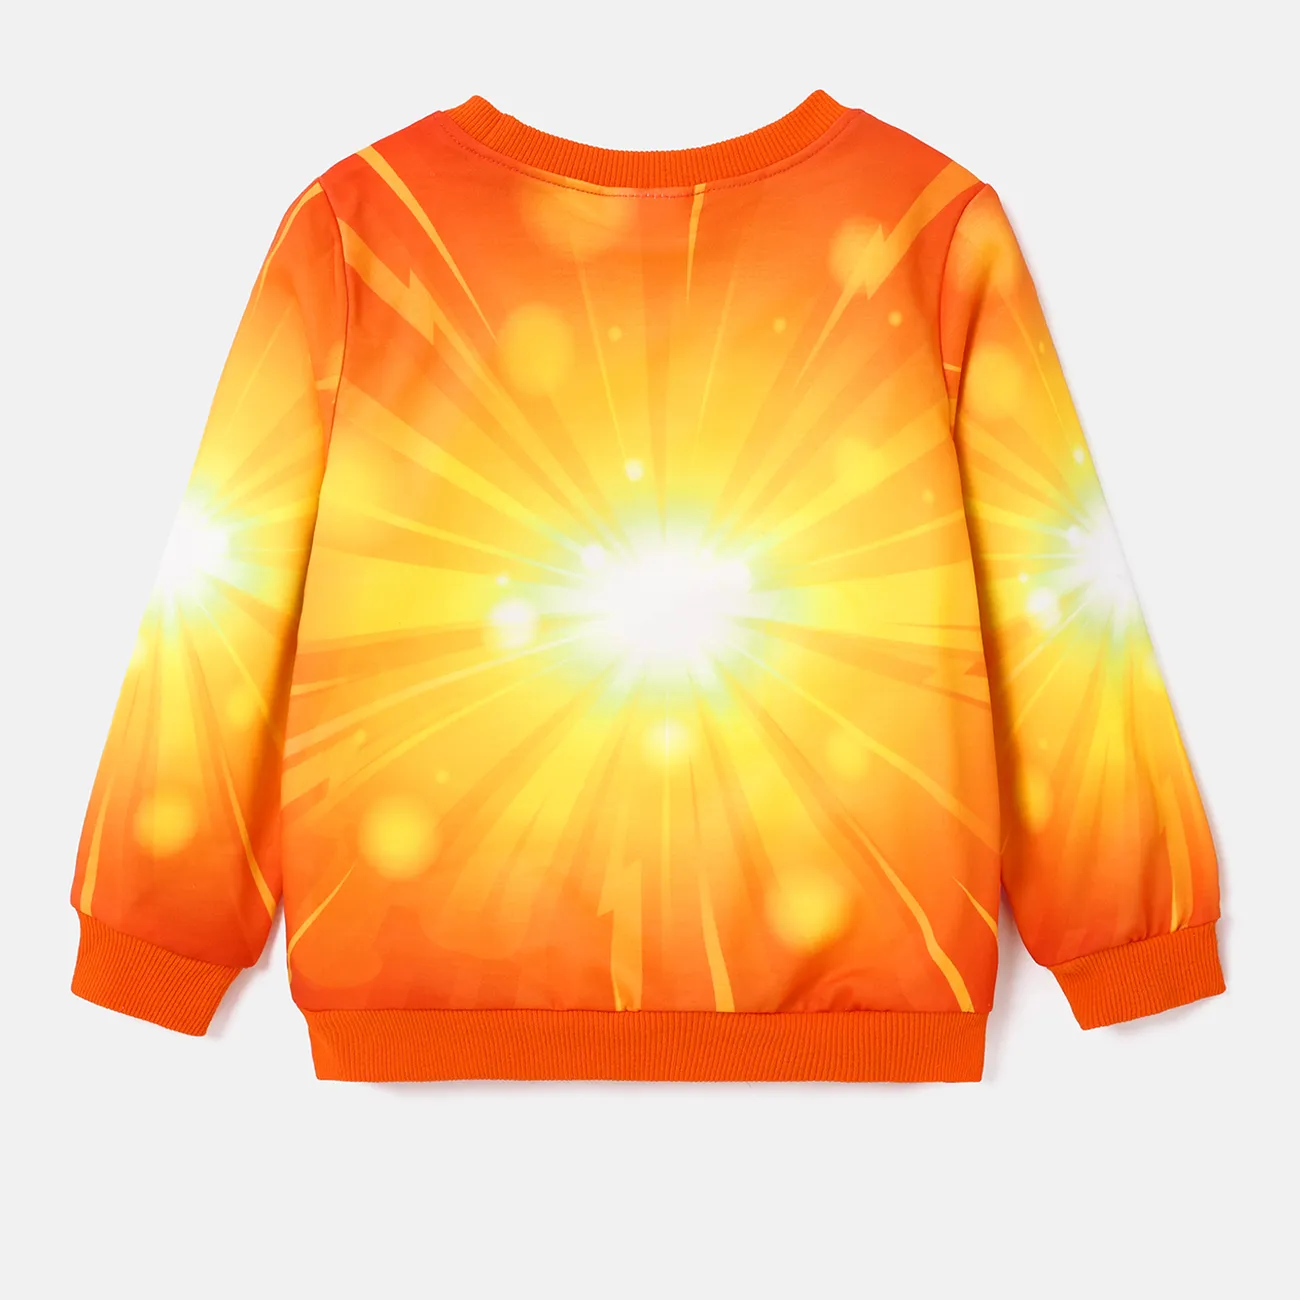 PAW Patrol Toddler Girl/Boy Character Print Pattern Long-sleeve Sweatshirt Orange big image 1